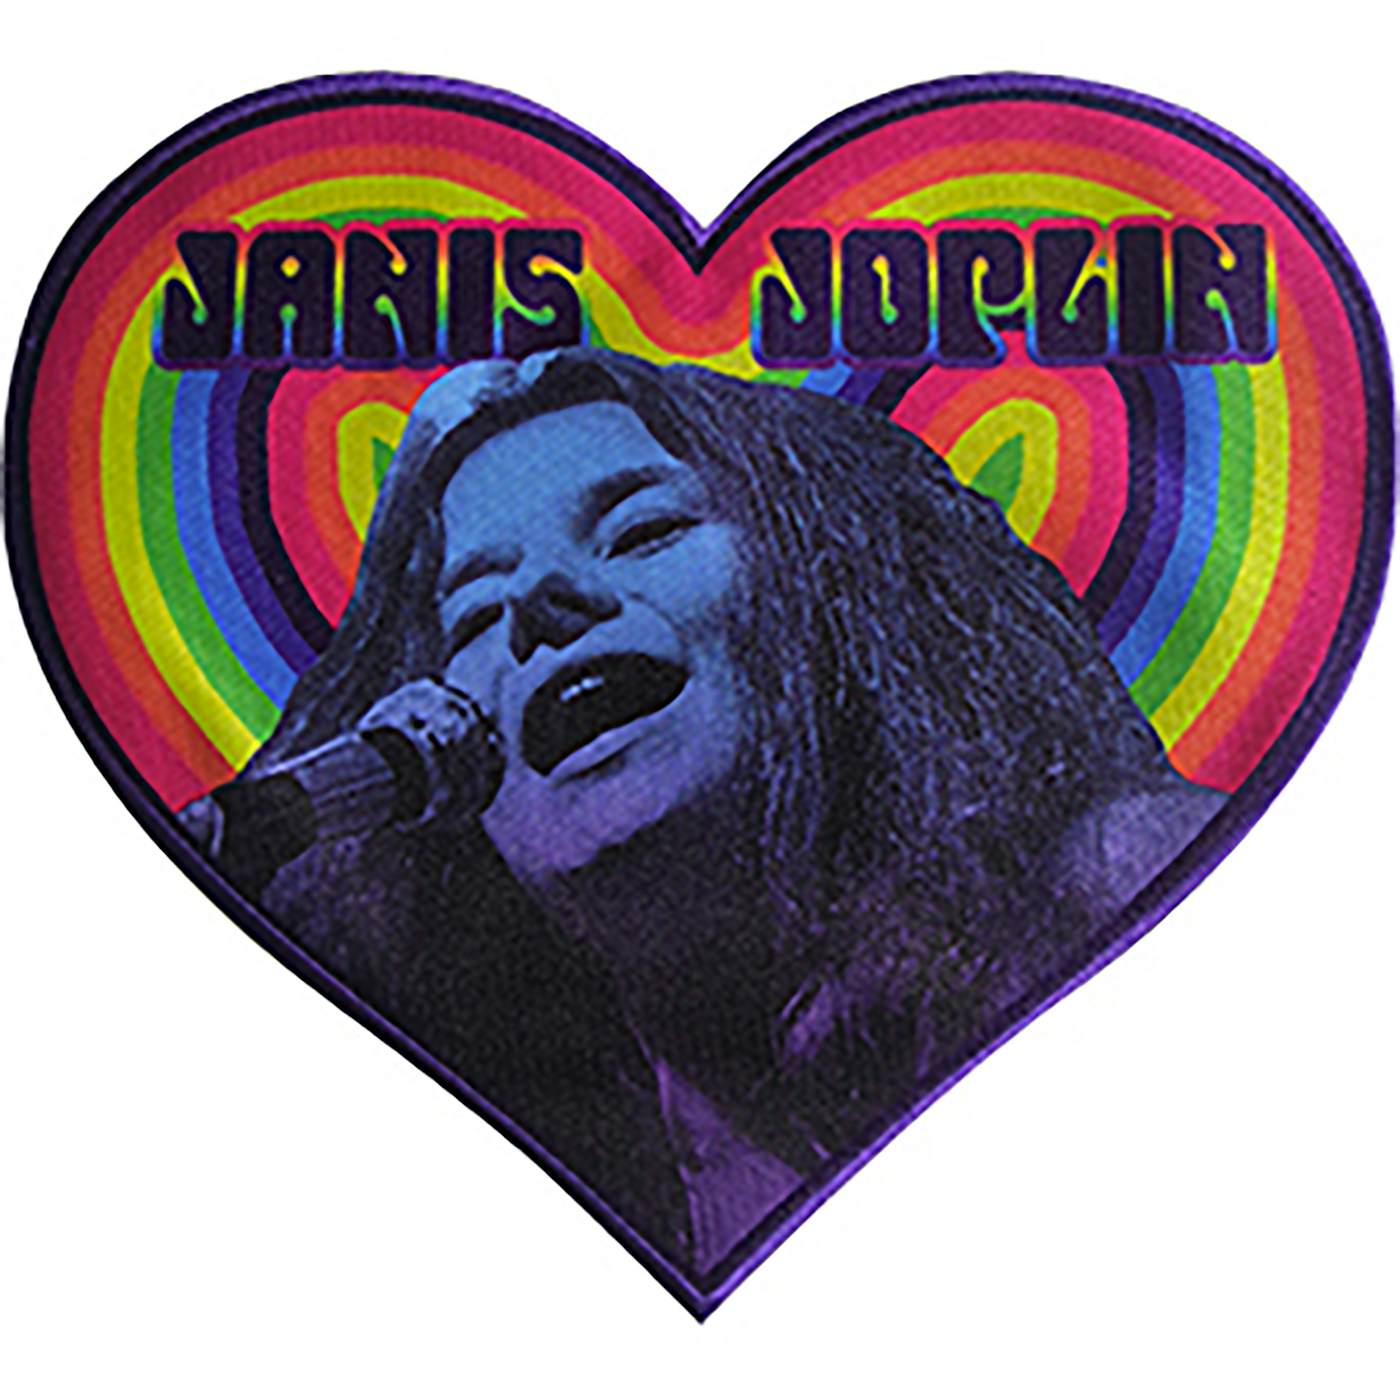 Janis Joplin Heart 9.2"x8.25" Oversized Patch